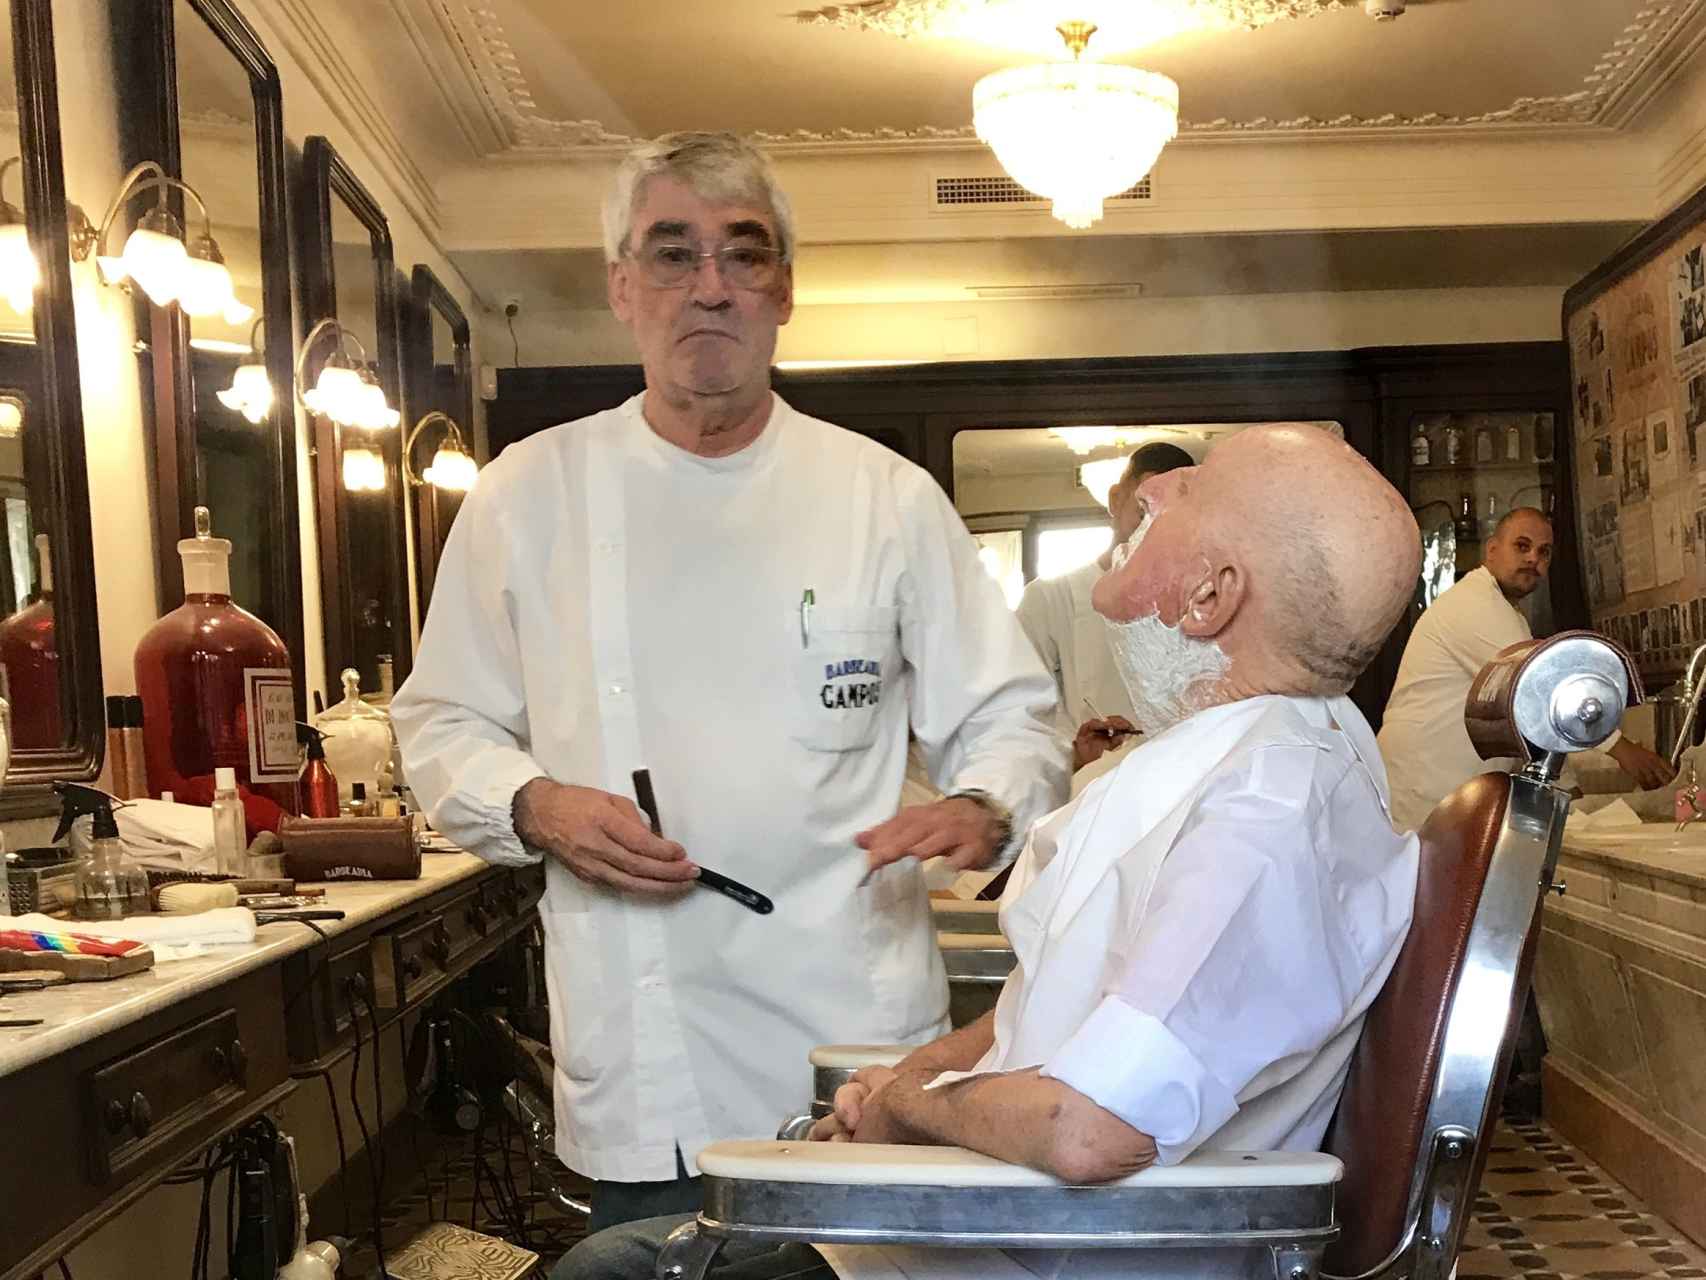 El peluquero posa mientras realiza su trabajo.